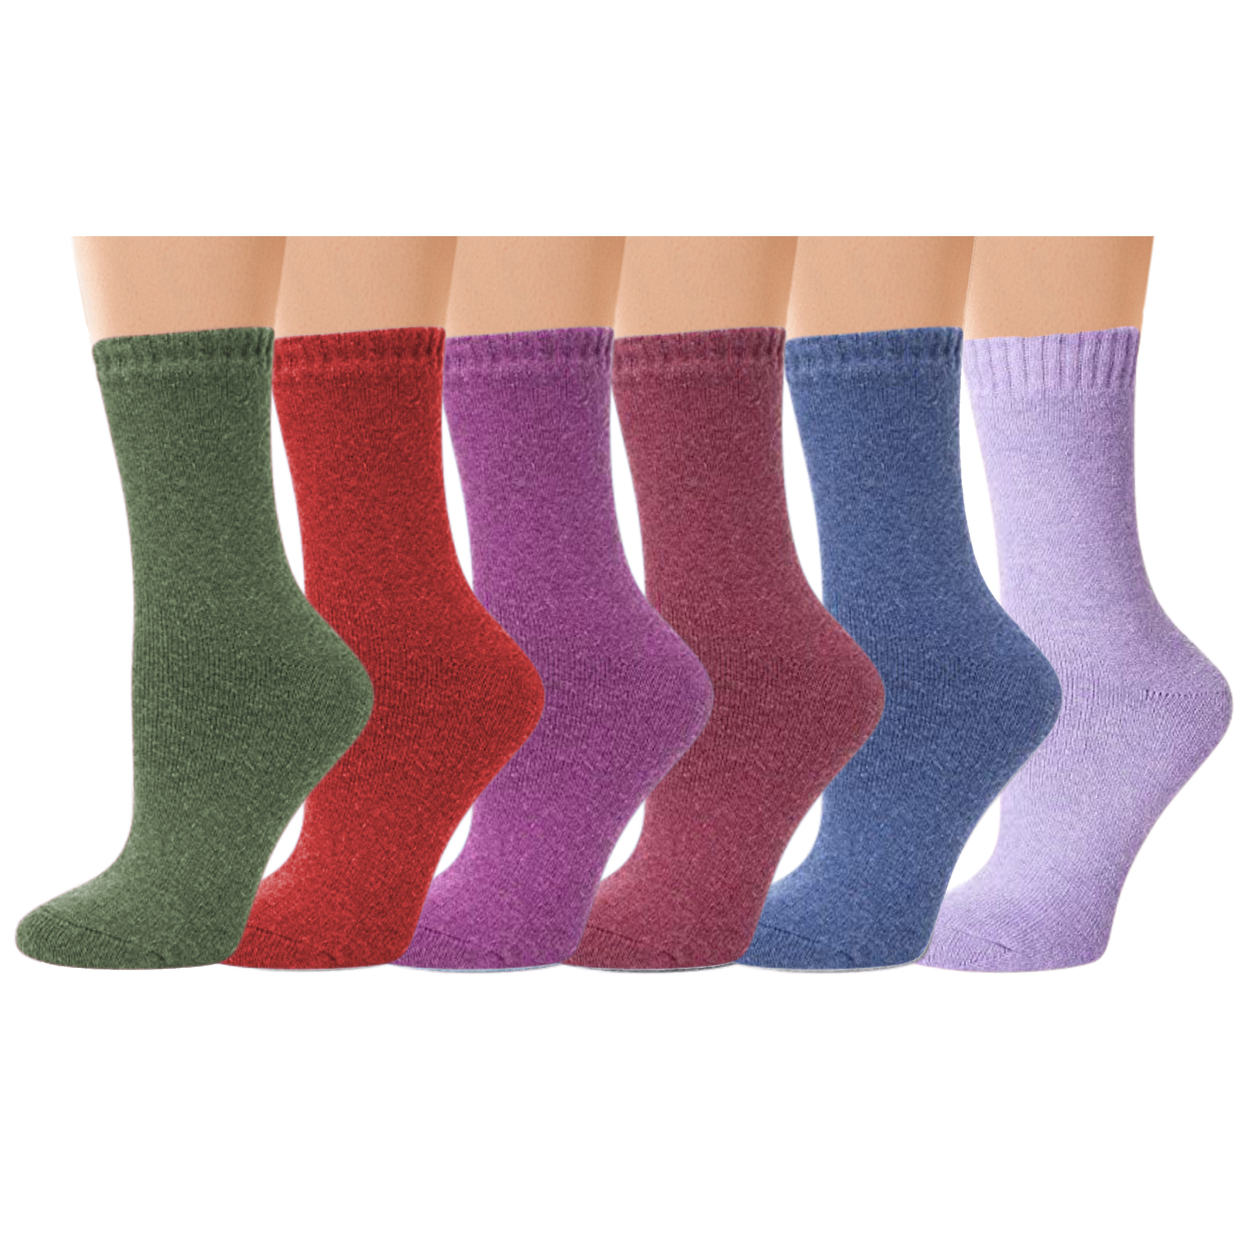 6-Pairs: Women's Warm Thick Merino Lamb Wool Winter Thermal Socks